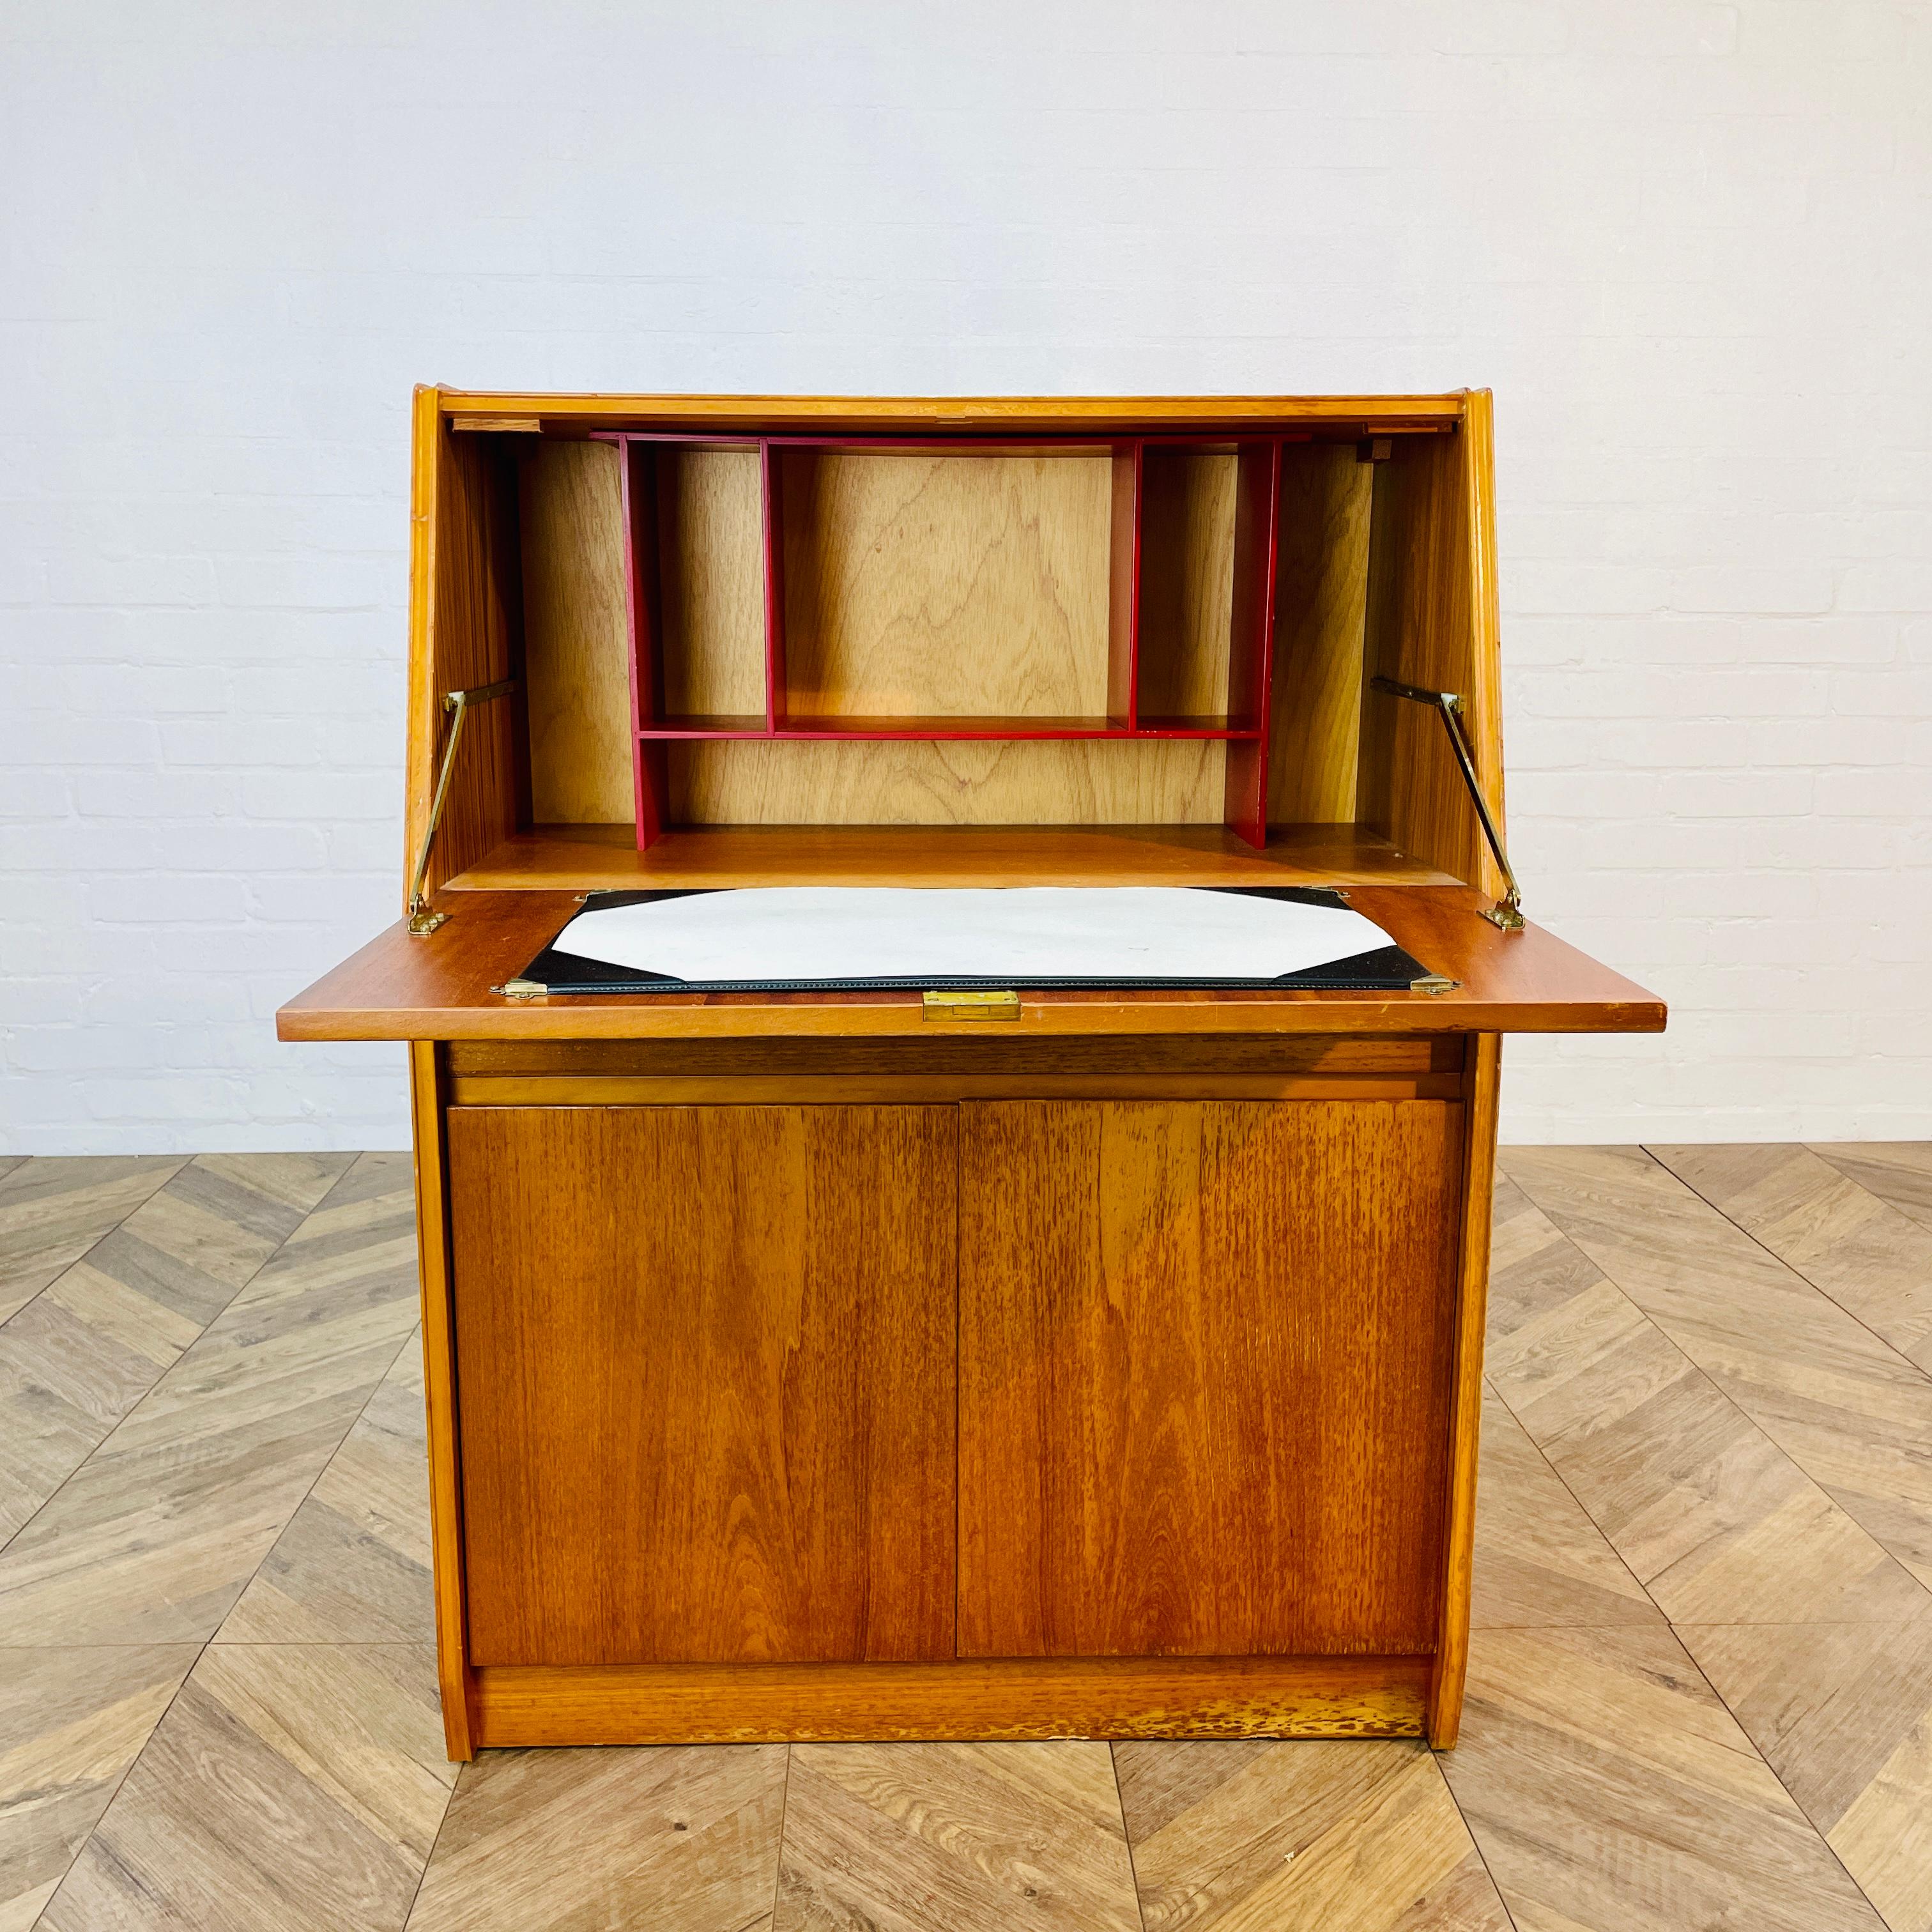 Bureau en teck du milieu du siècle, fabriqué par Remploy - années 1970.

Le bureau comprend un pupitre, un tiroir simple et deux portes de placard.

Le meuble présente des signes d'usure dans les coins, conformément à son âge et à son utilisation,